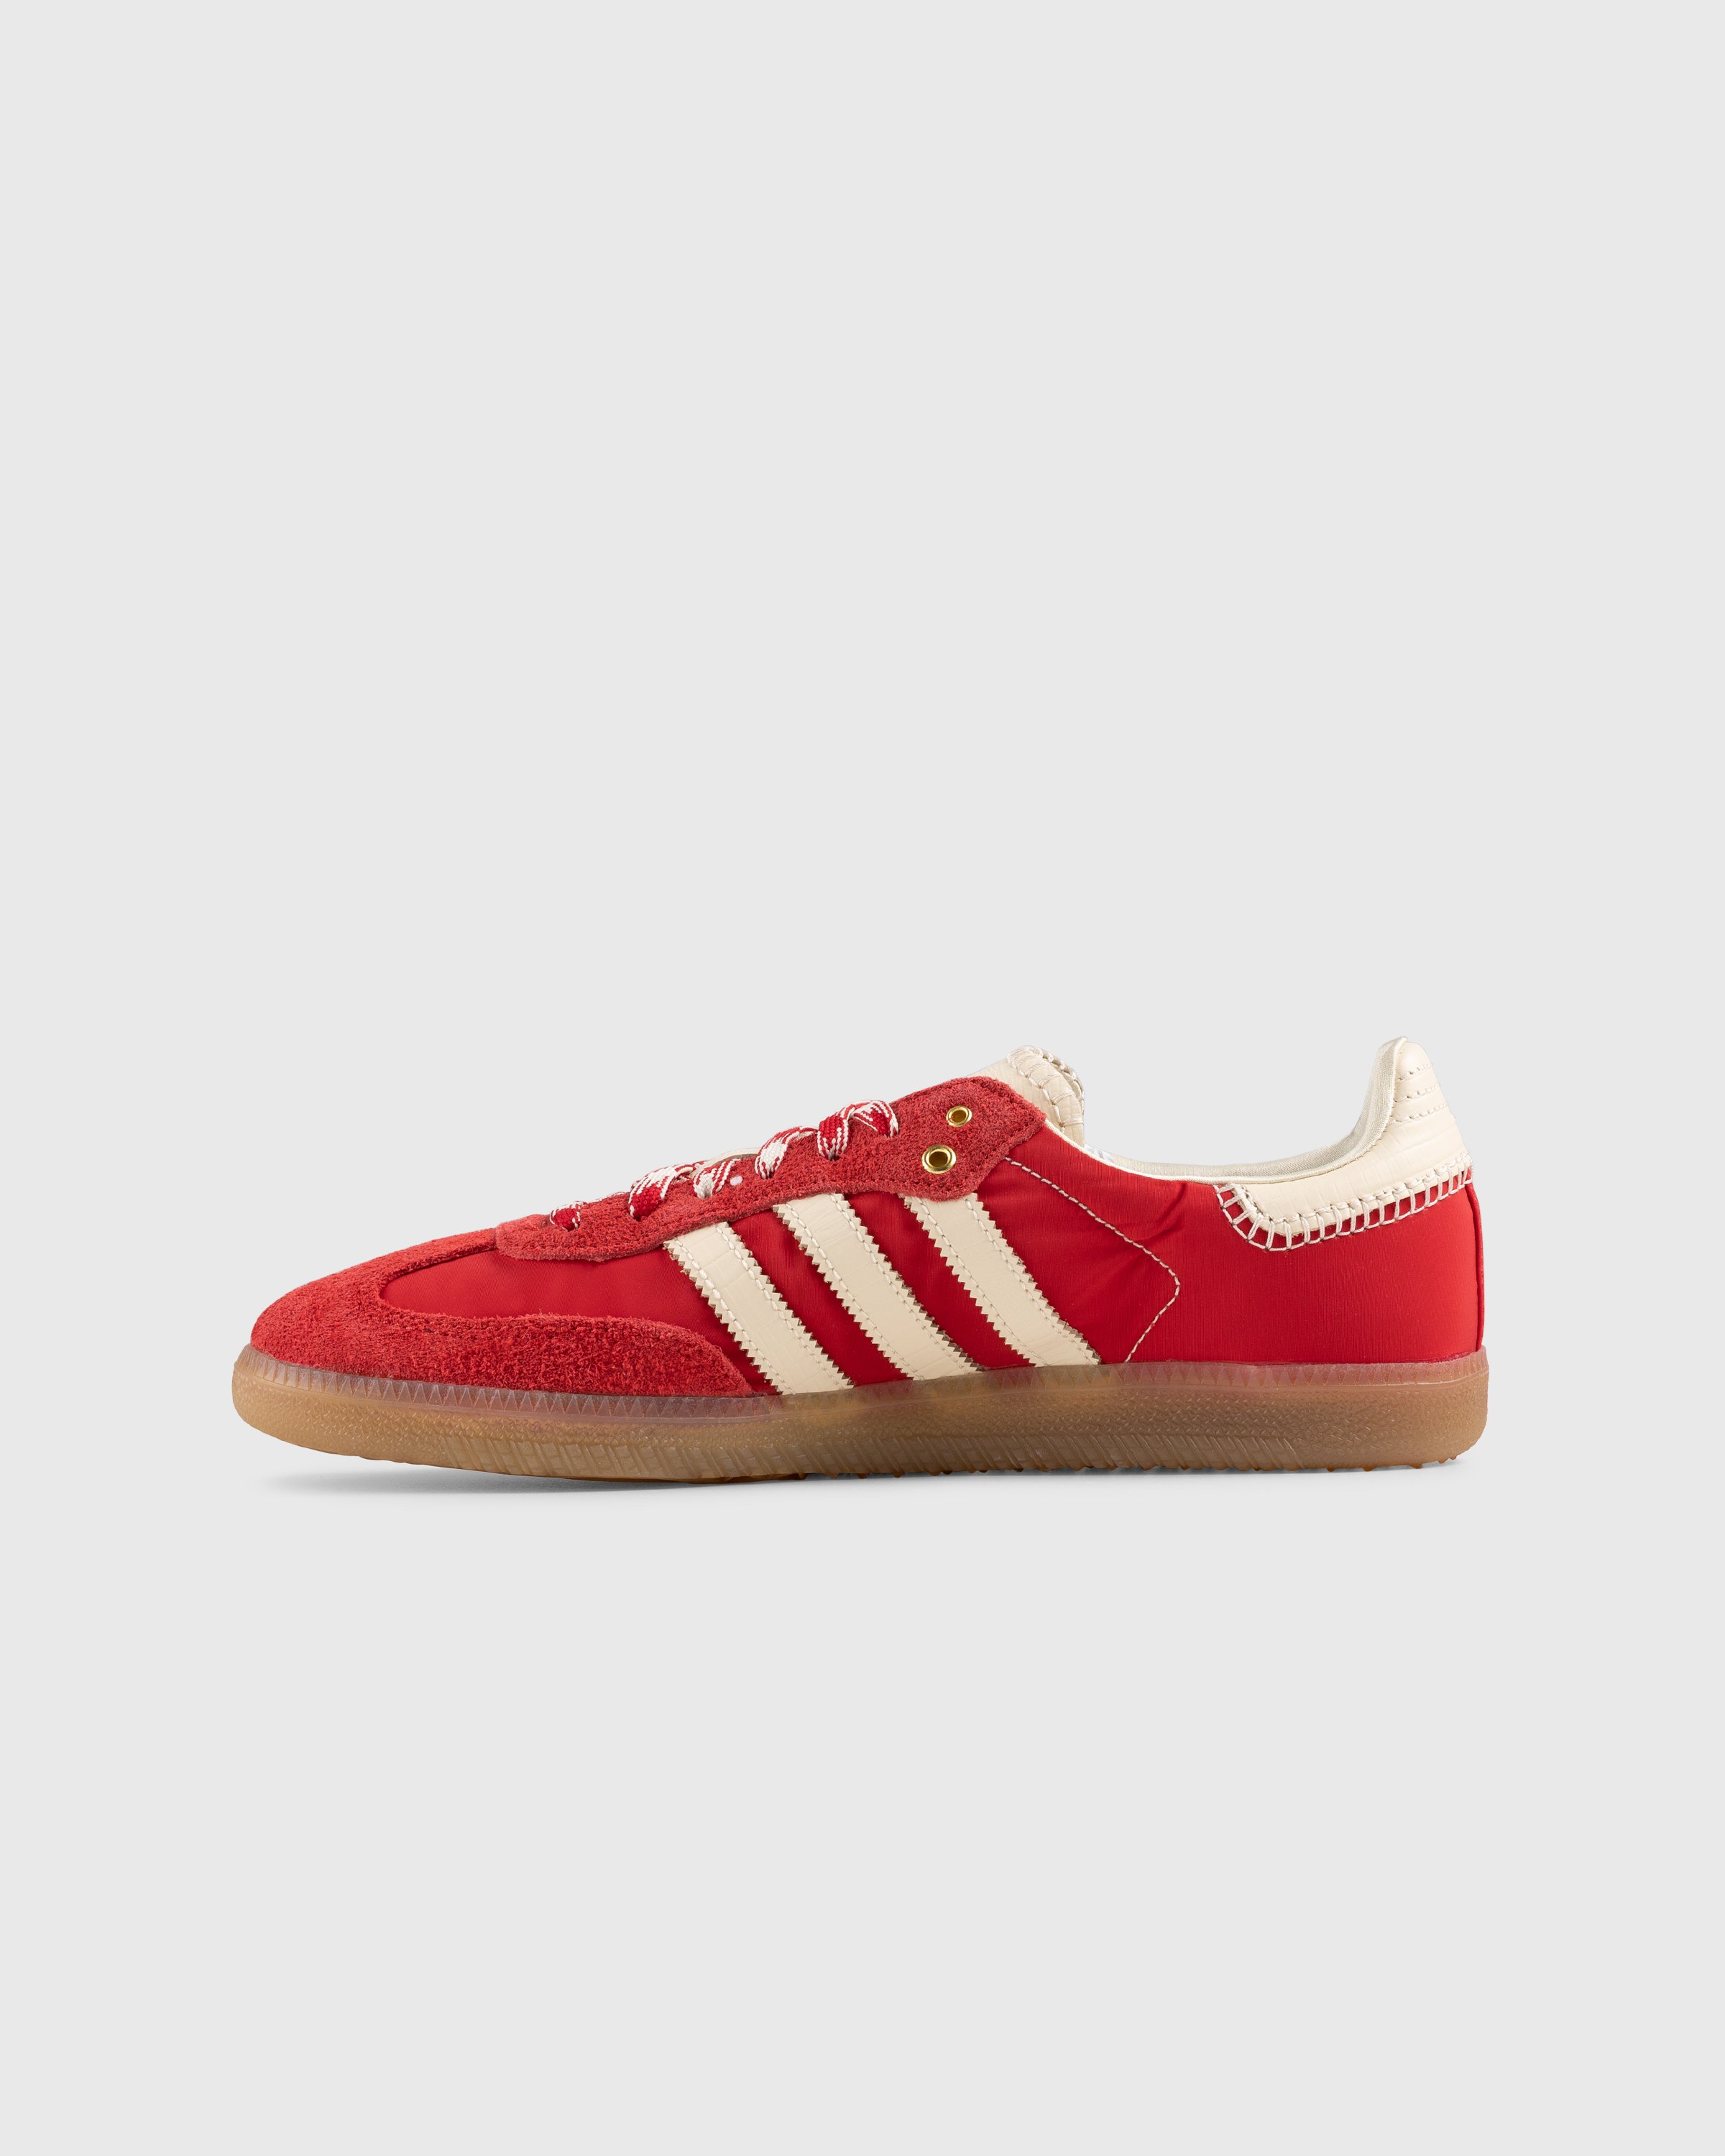 Adidas x Wales Bonner - WB Samba Scarlet/Ecru Tint/Scarlet - Footwear - Red - Image 2